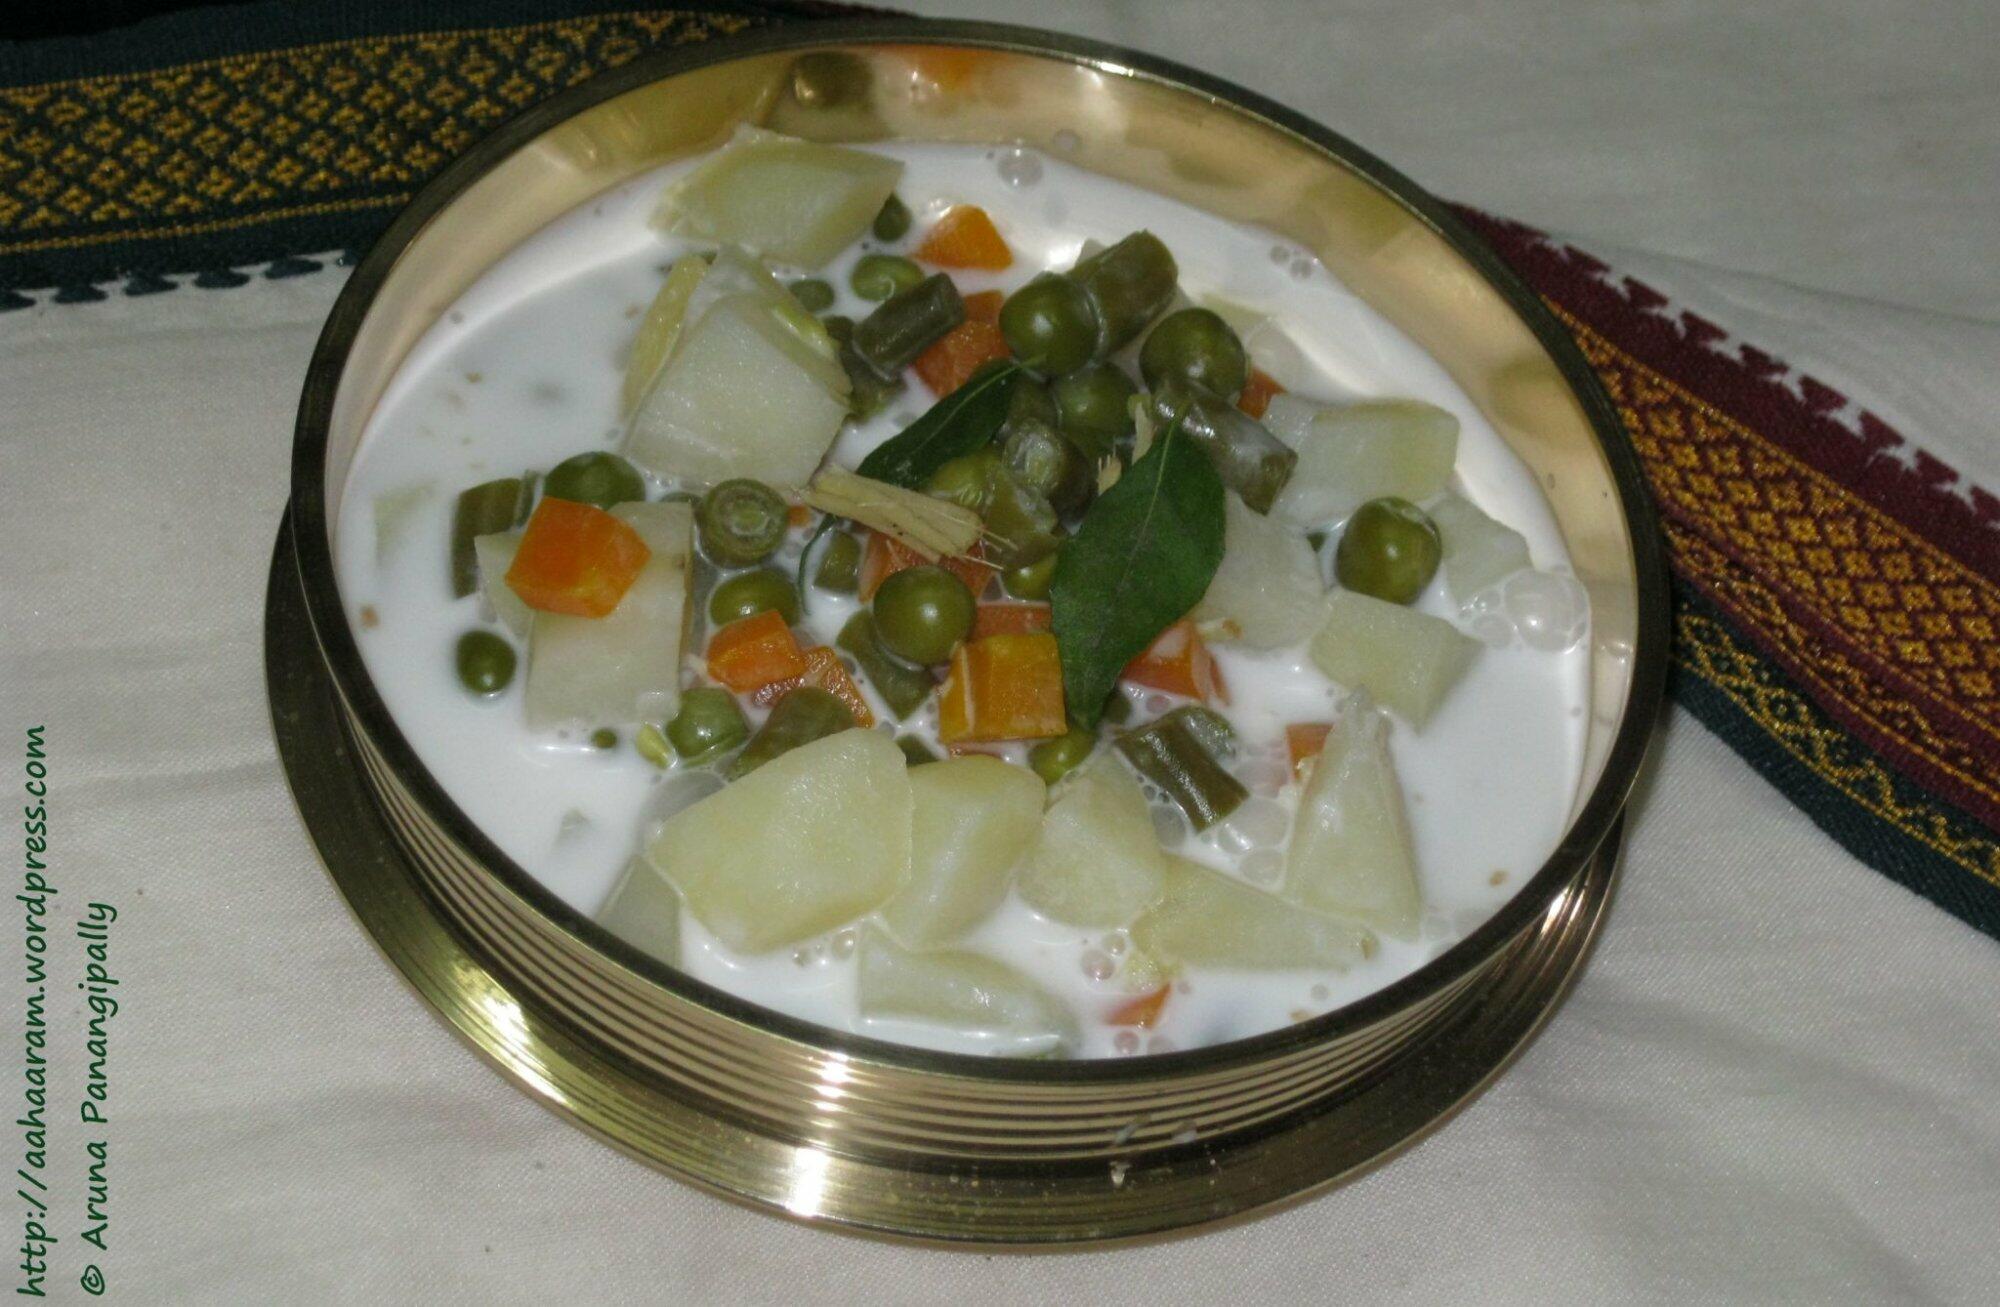 Kerala Style Stew or Vegetables in Coconut Milk